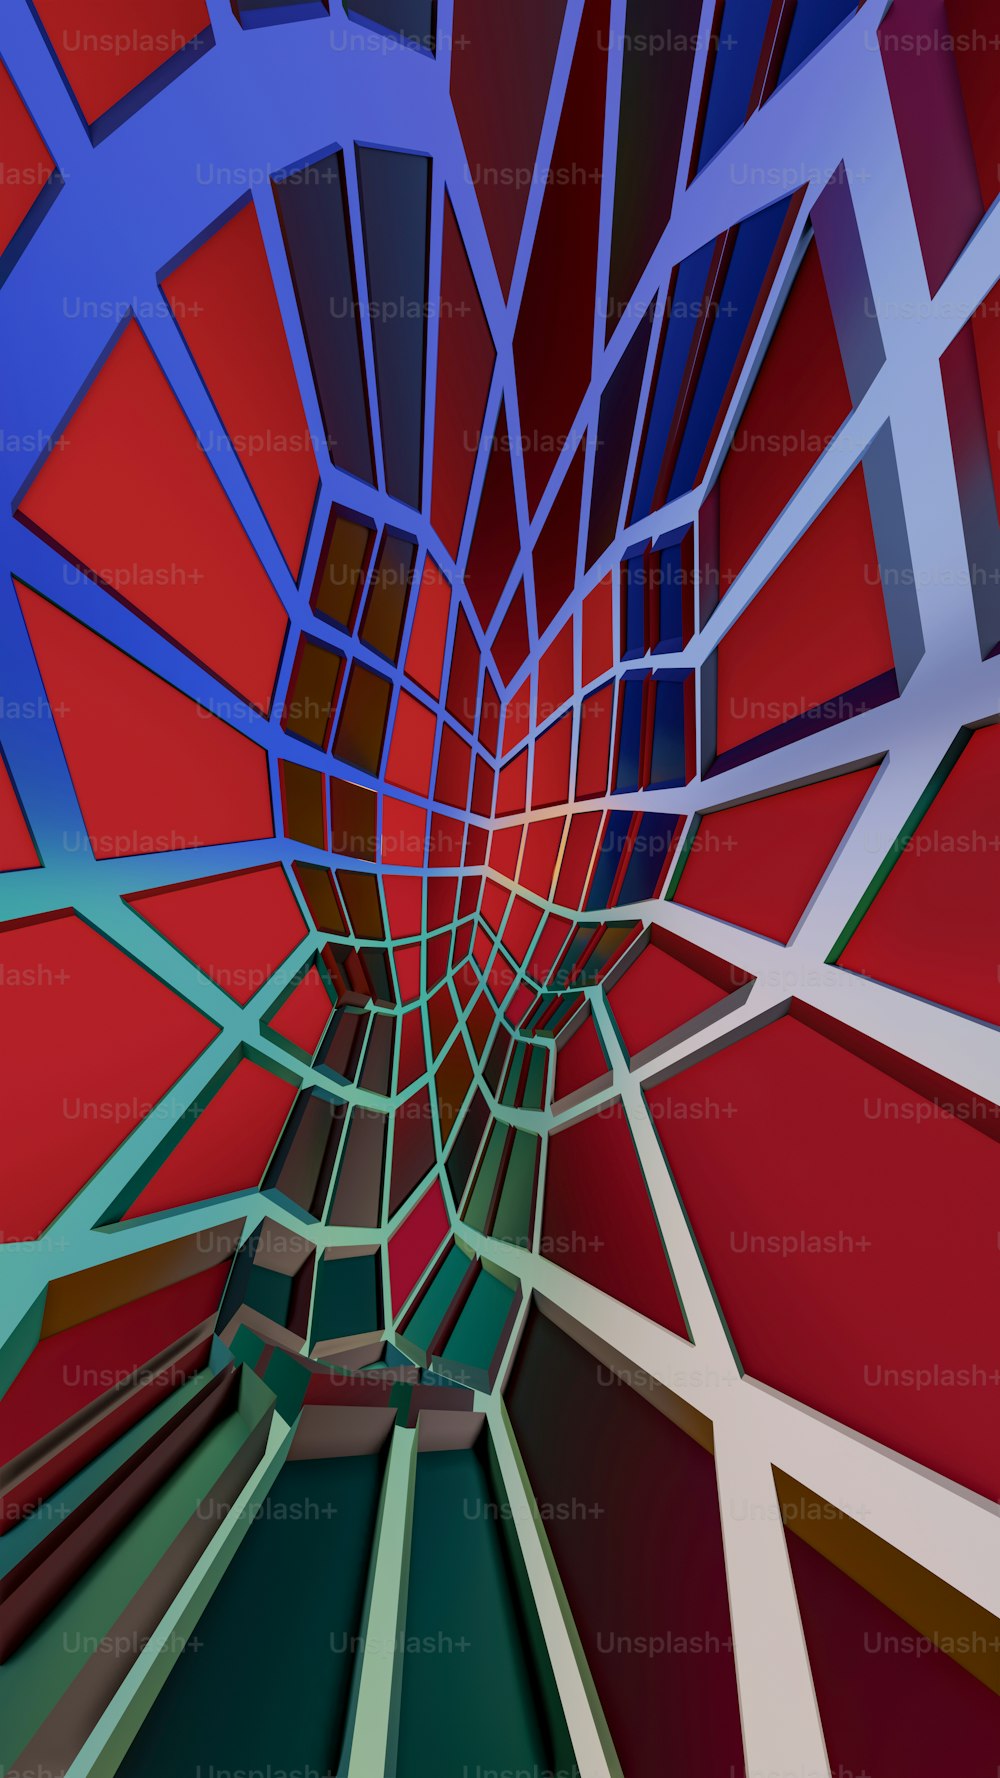 Un'immagine astratta di una struttura rossa e blu